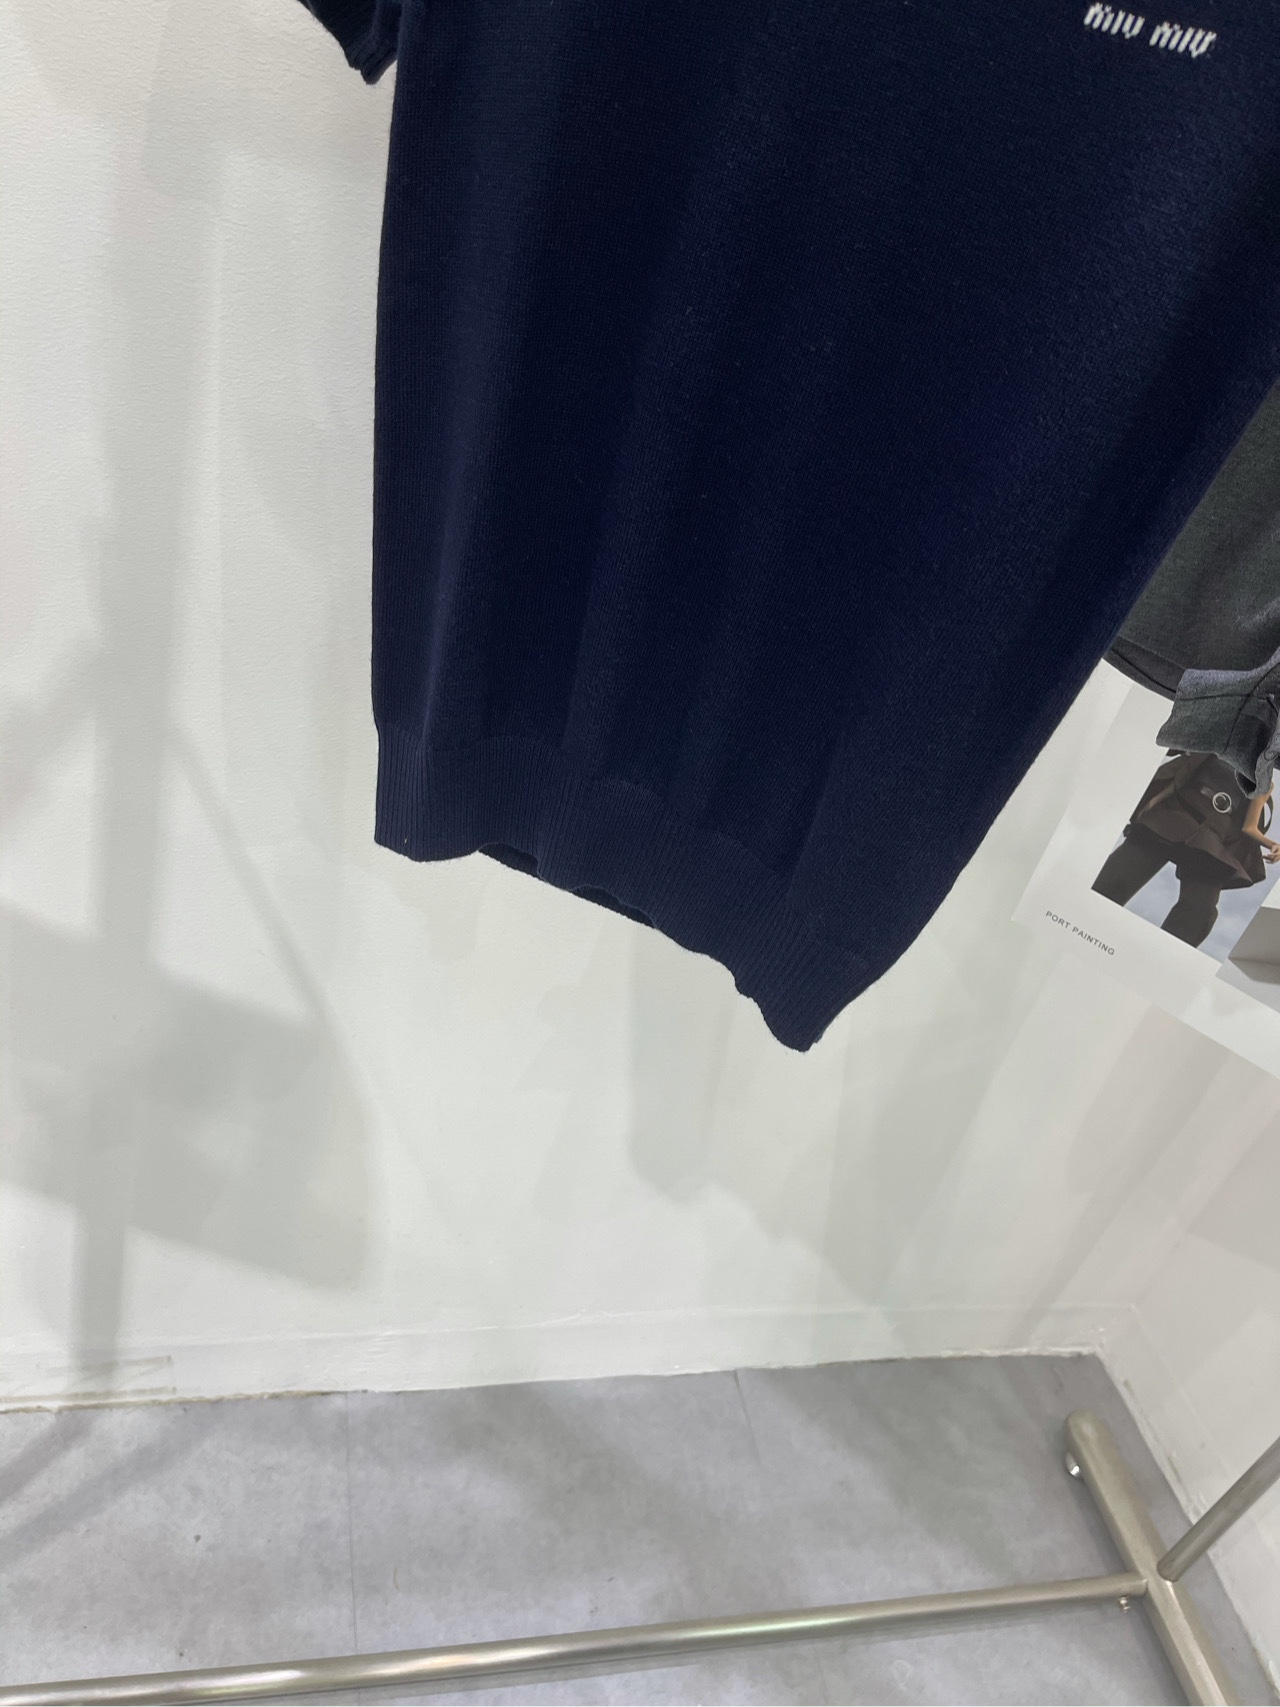 爆買い品質保証 ミュウミュウ ツイリー激安通販 Tシャツ トップス 短袖 純綿 シンプル ブルー_9